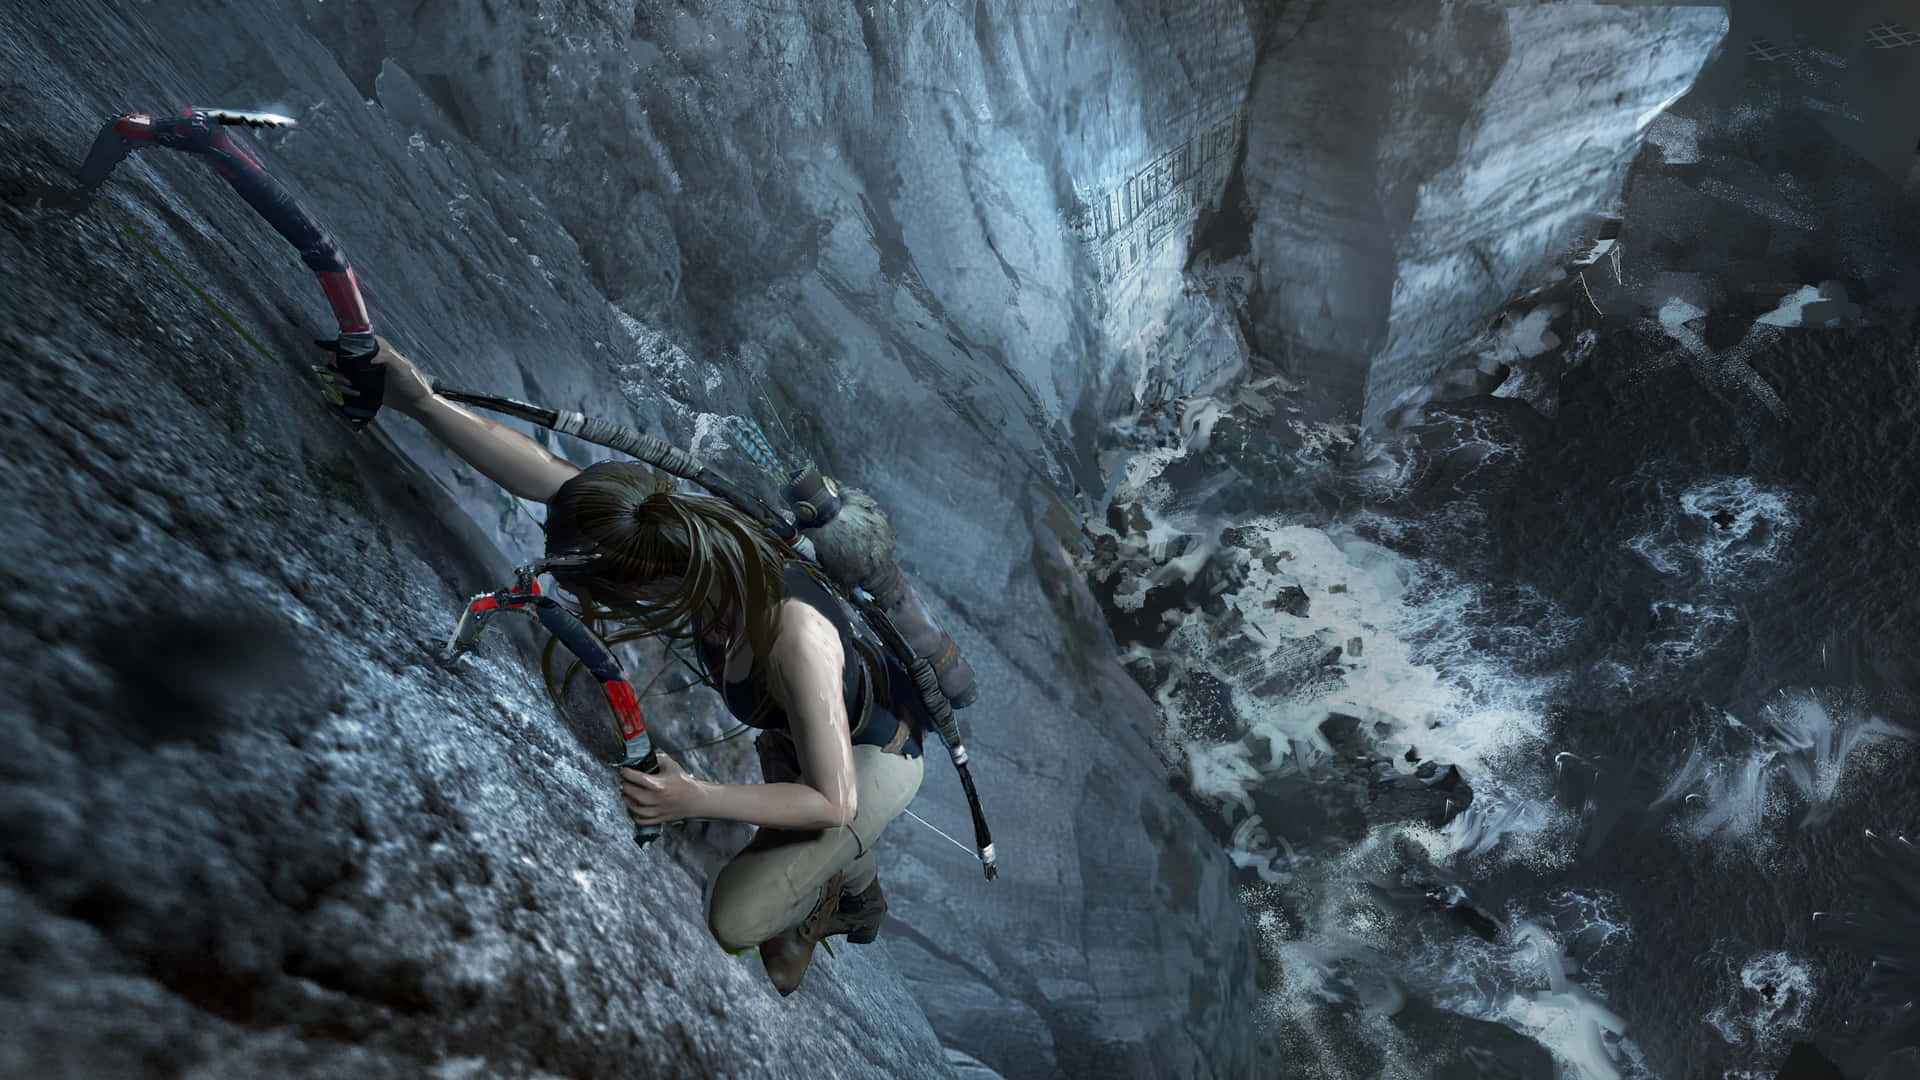 Fondode Pantalla De Escalada En La Montaña En 4k Para Shadow Of The Tomb Raider.